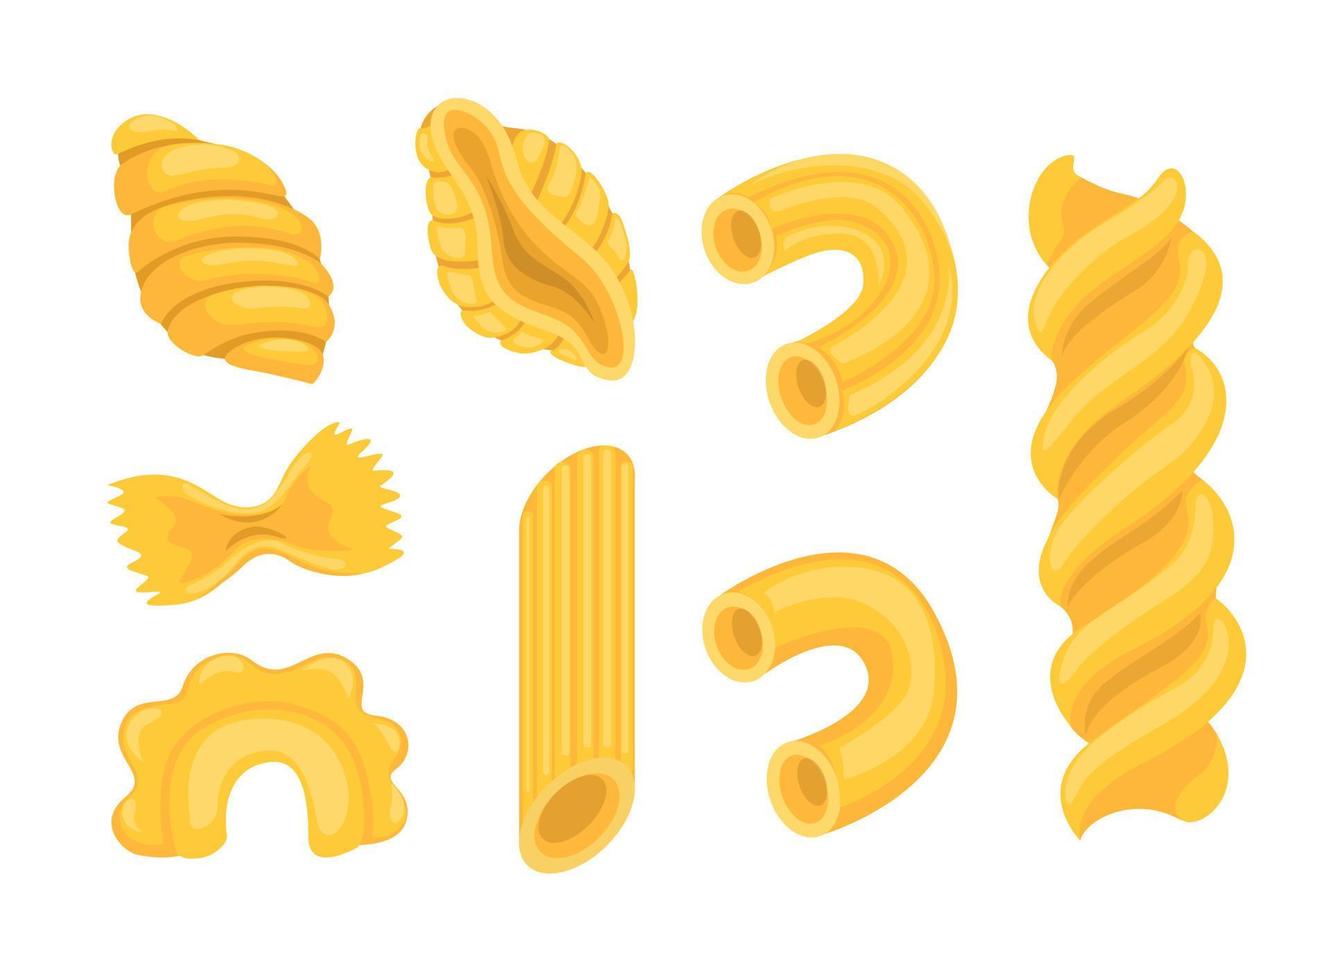 tipo di pasta italiana raccolta di noodle set cartoon illustrazione vettoriale